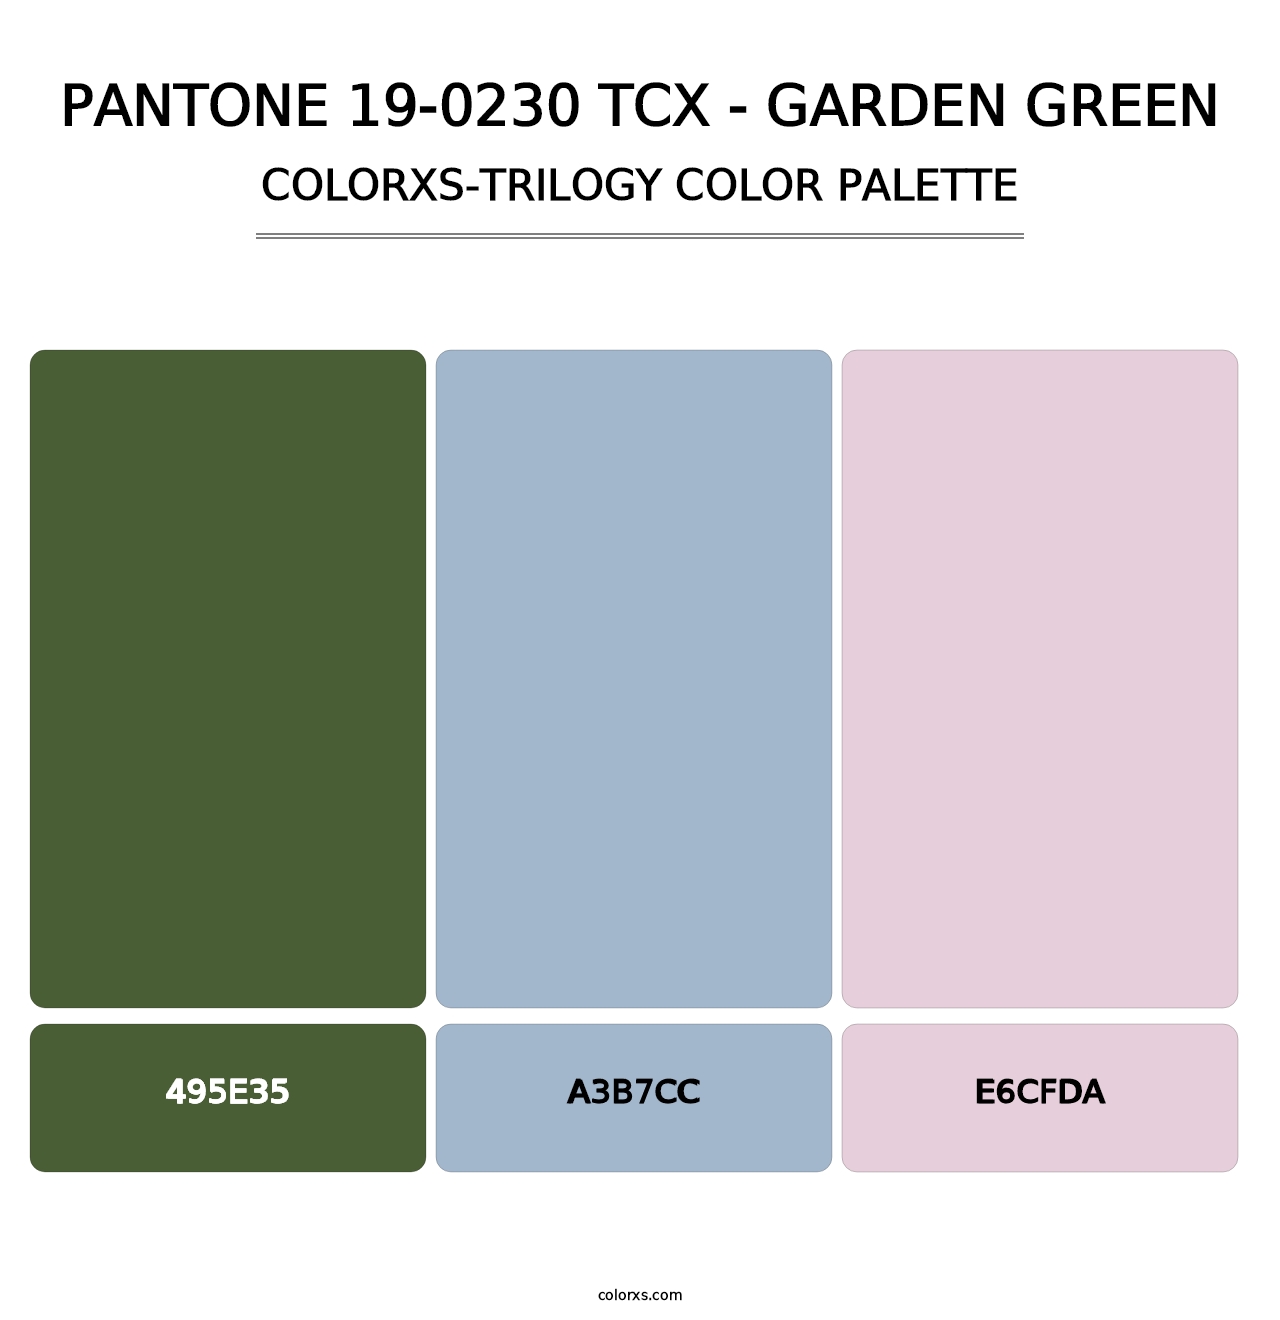 PANTONE 19-0230 TCX - Garden Green - Colorxs Trilogy Palette